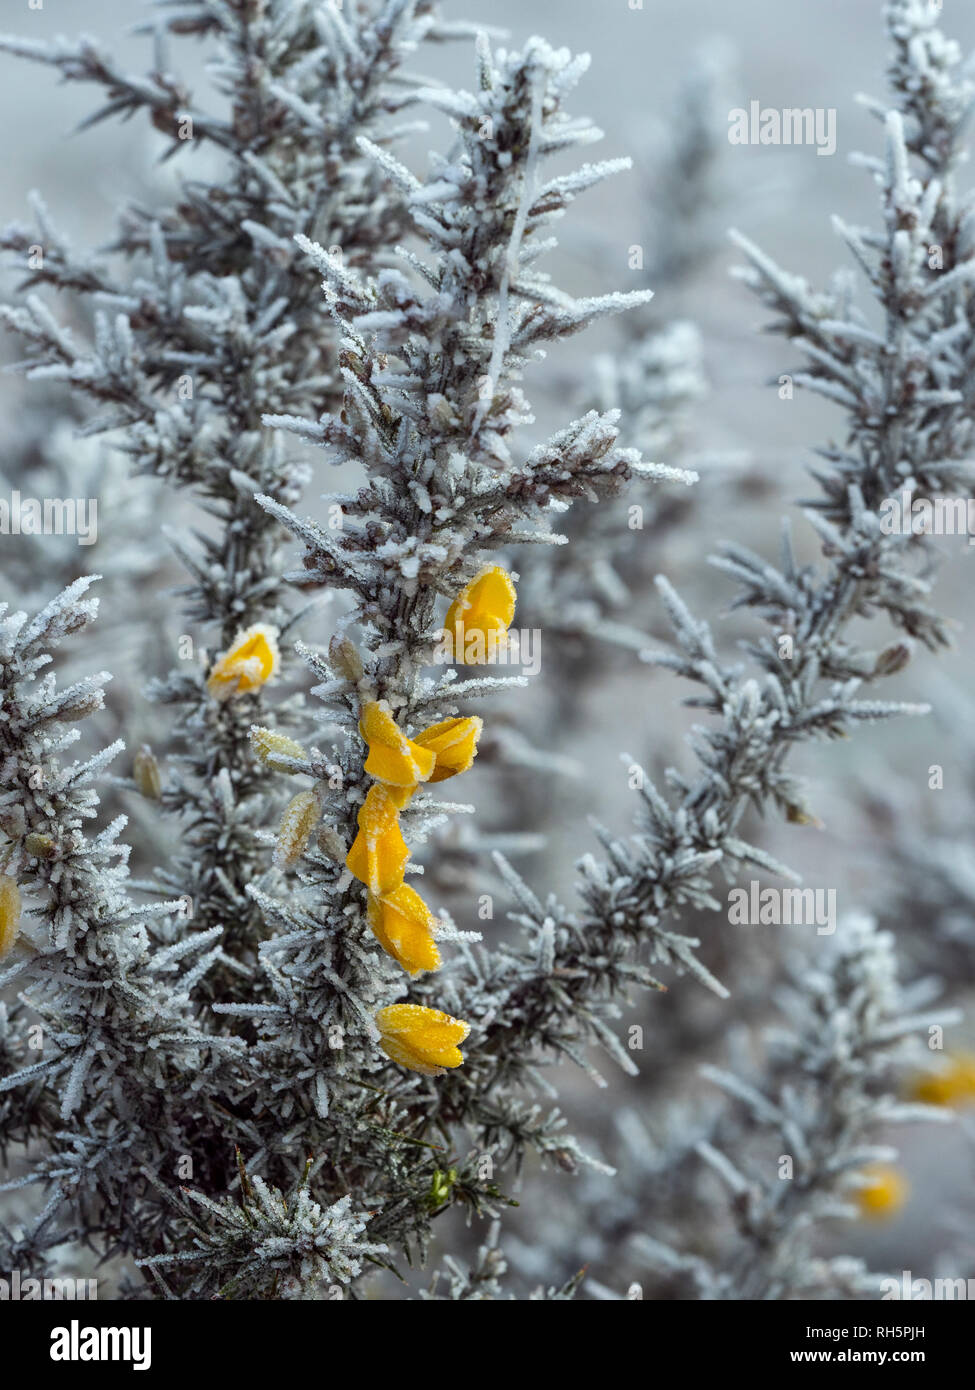 Ginestre in fiore in pieno inverno coperto di gelo e neve Foto Stock